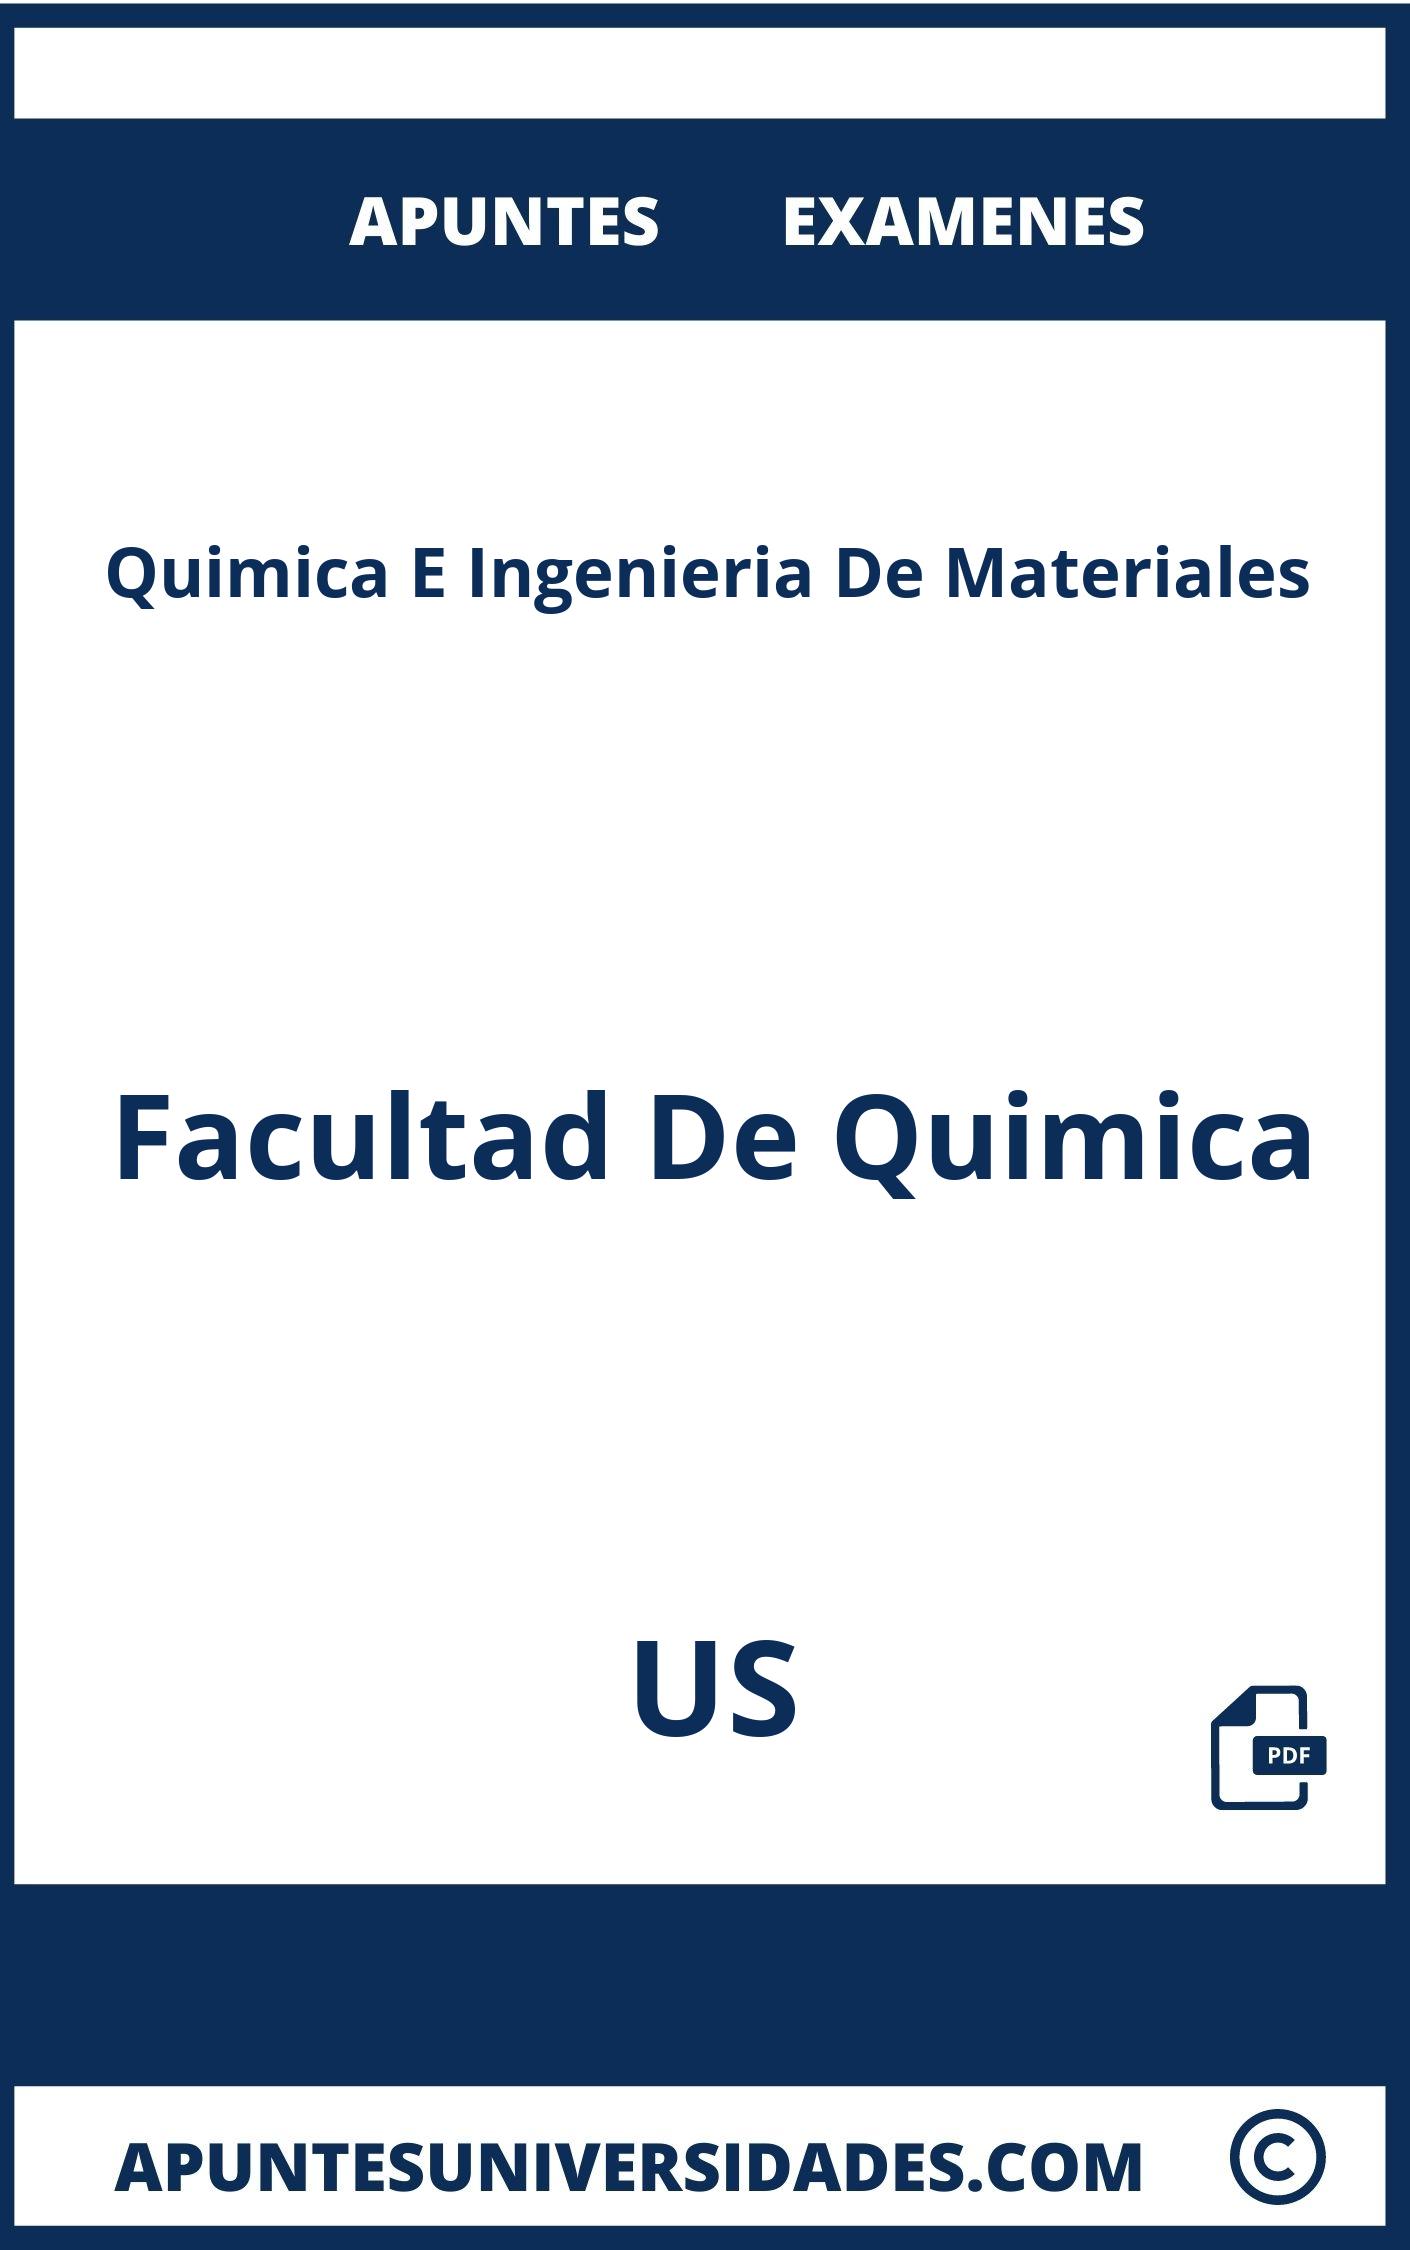 Examenes Apuntes Quimica E Ingenieria De Materiales US